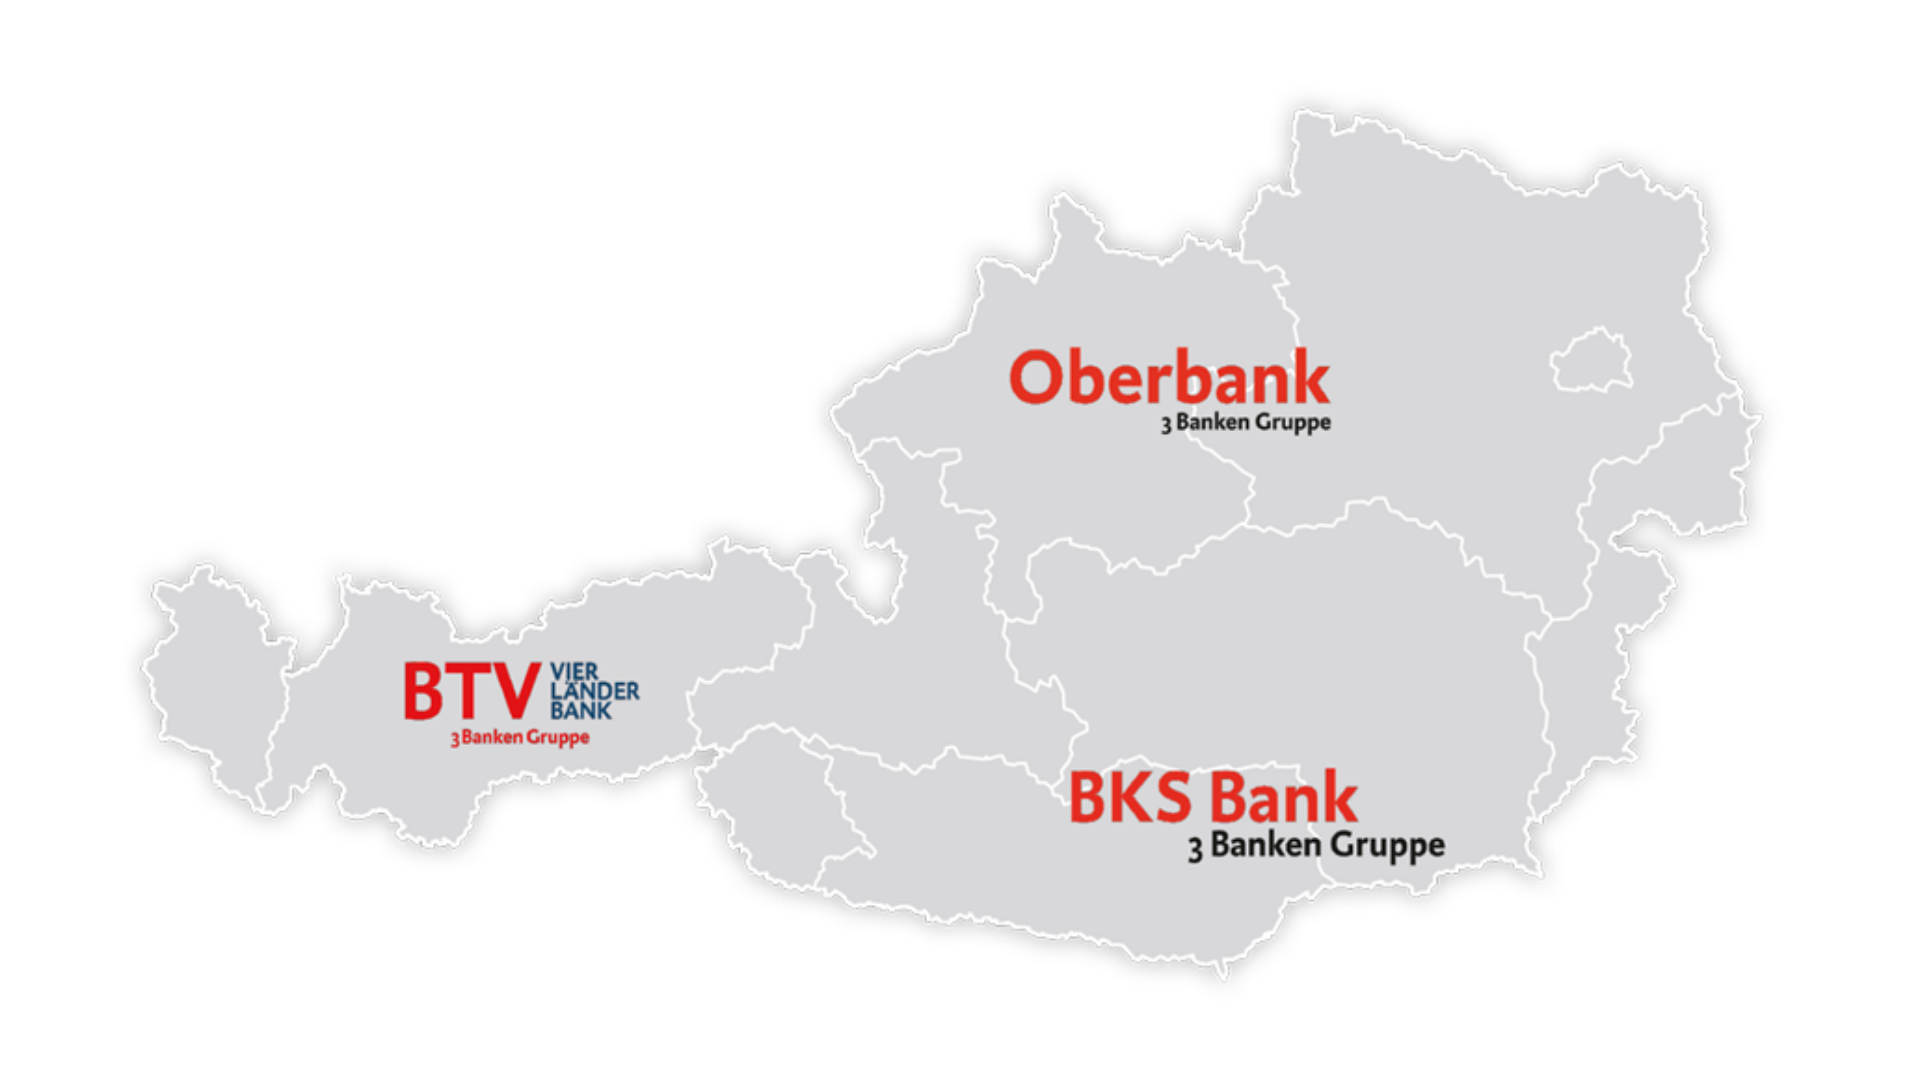 Landkarte von Österreich mit den Logos der BTV, Oberbank und BKS Bank, um deren Marktgebiet zu visualisieren